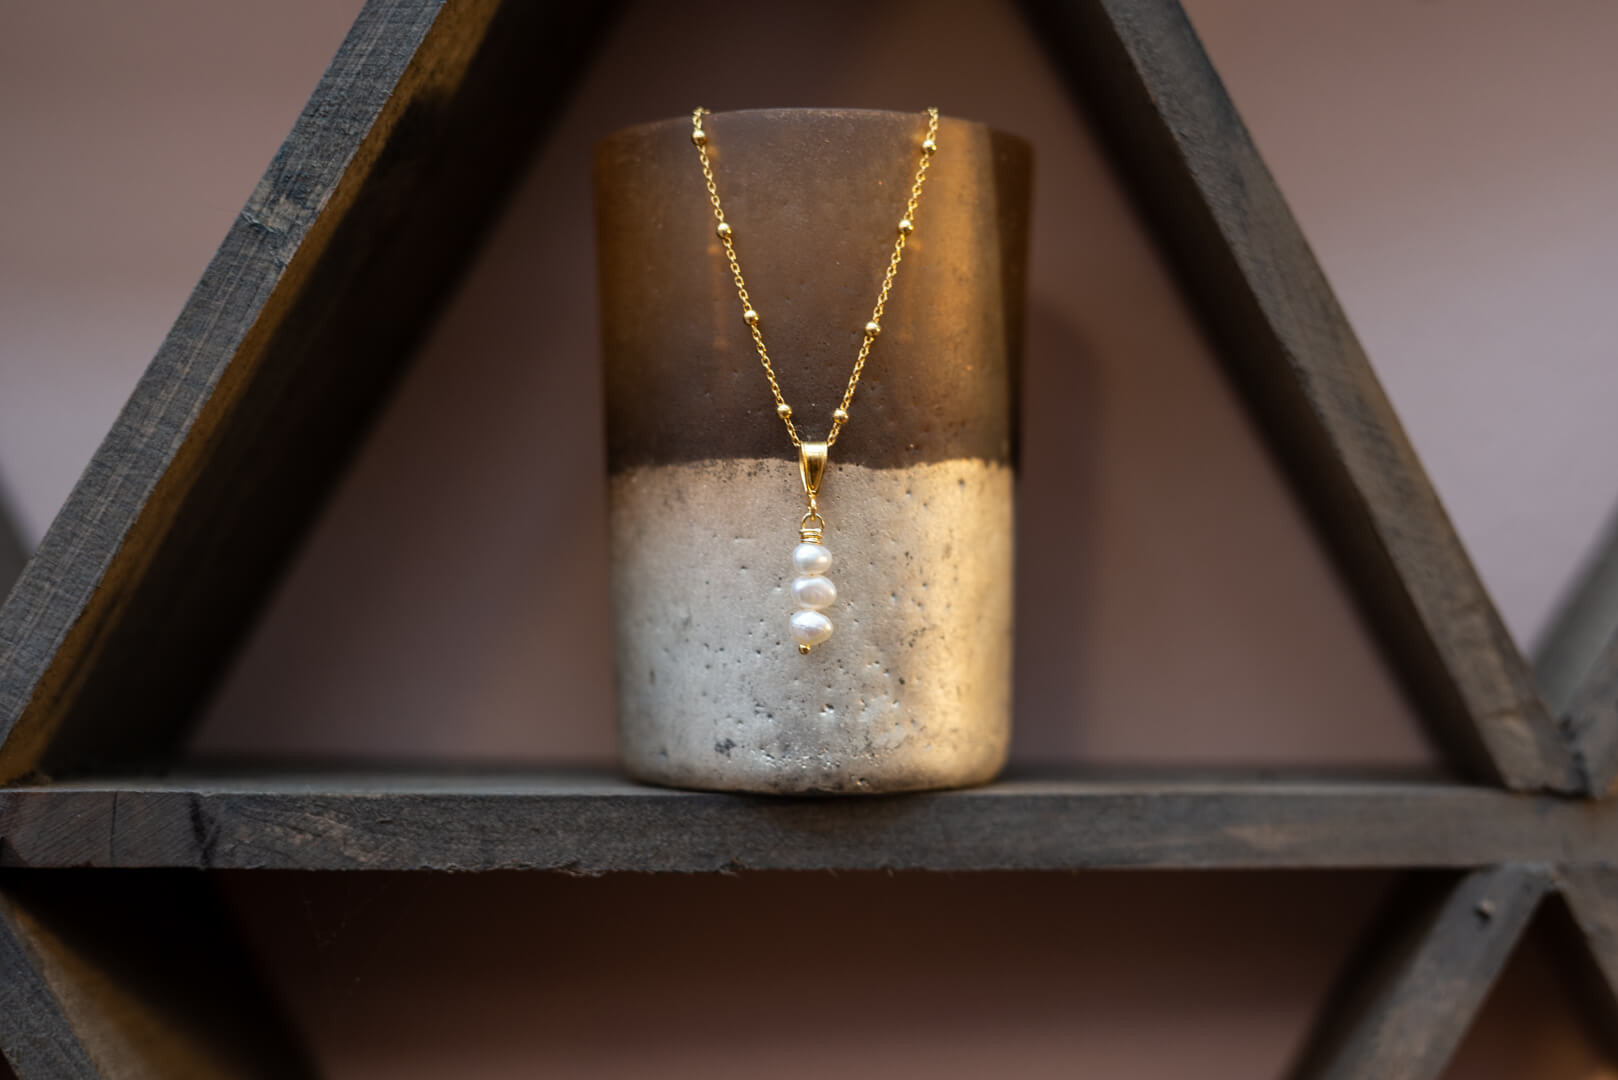 Feestcollectie met handgemaakte sieraden zoals een halsketting met zoetwaterparels